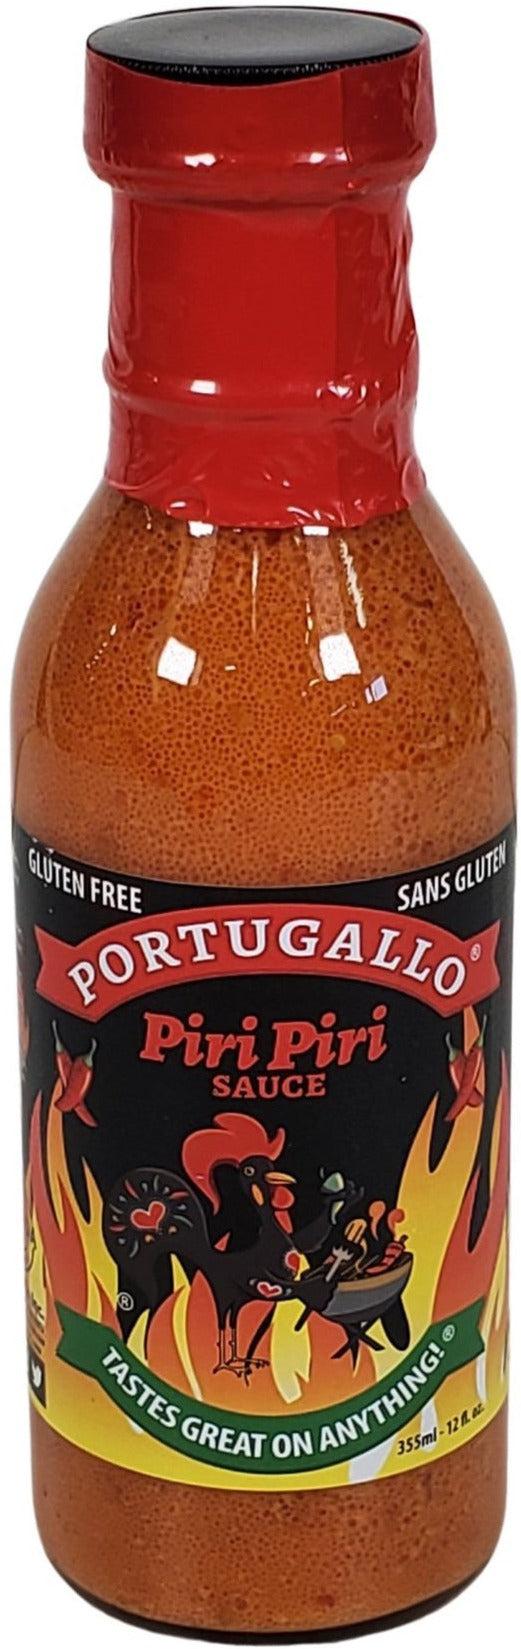 Portugallo - Piri Piri Sauce